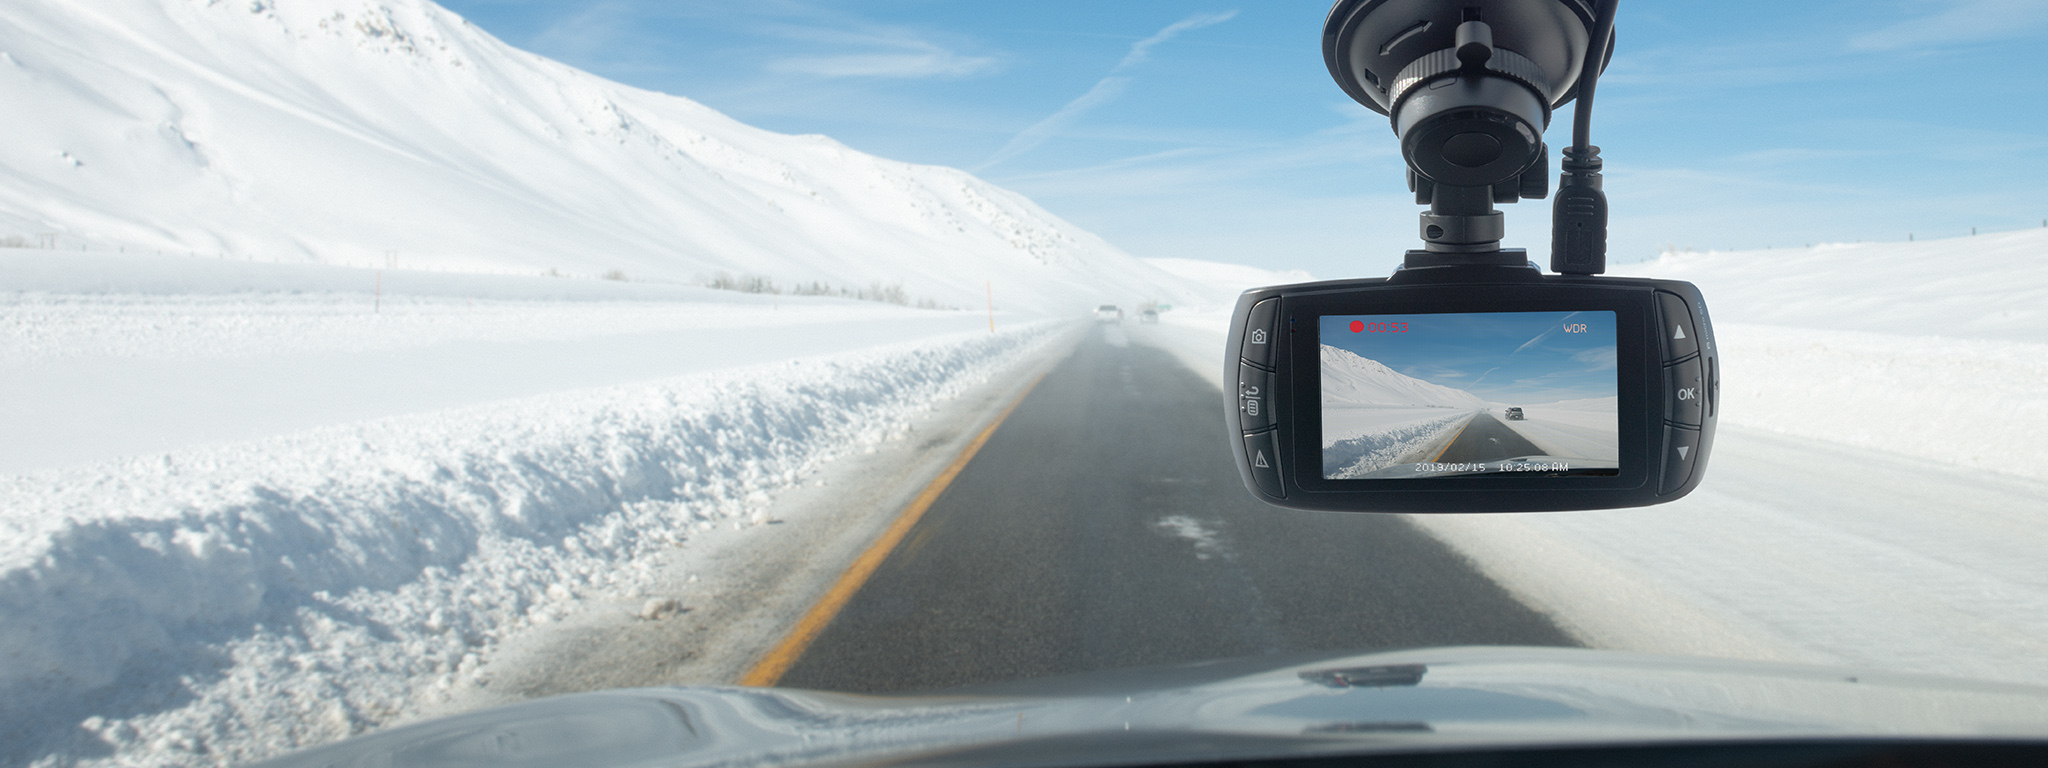 видеорегистратор, установленный за лобовым стеклом машины, которая движется по чистой дороге на фоне заснеженного ландшафта